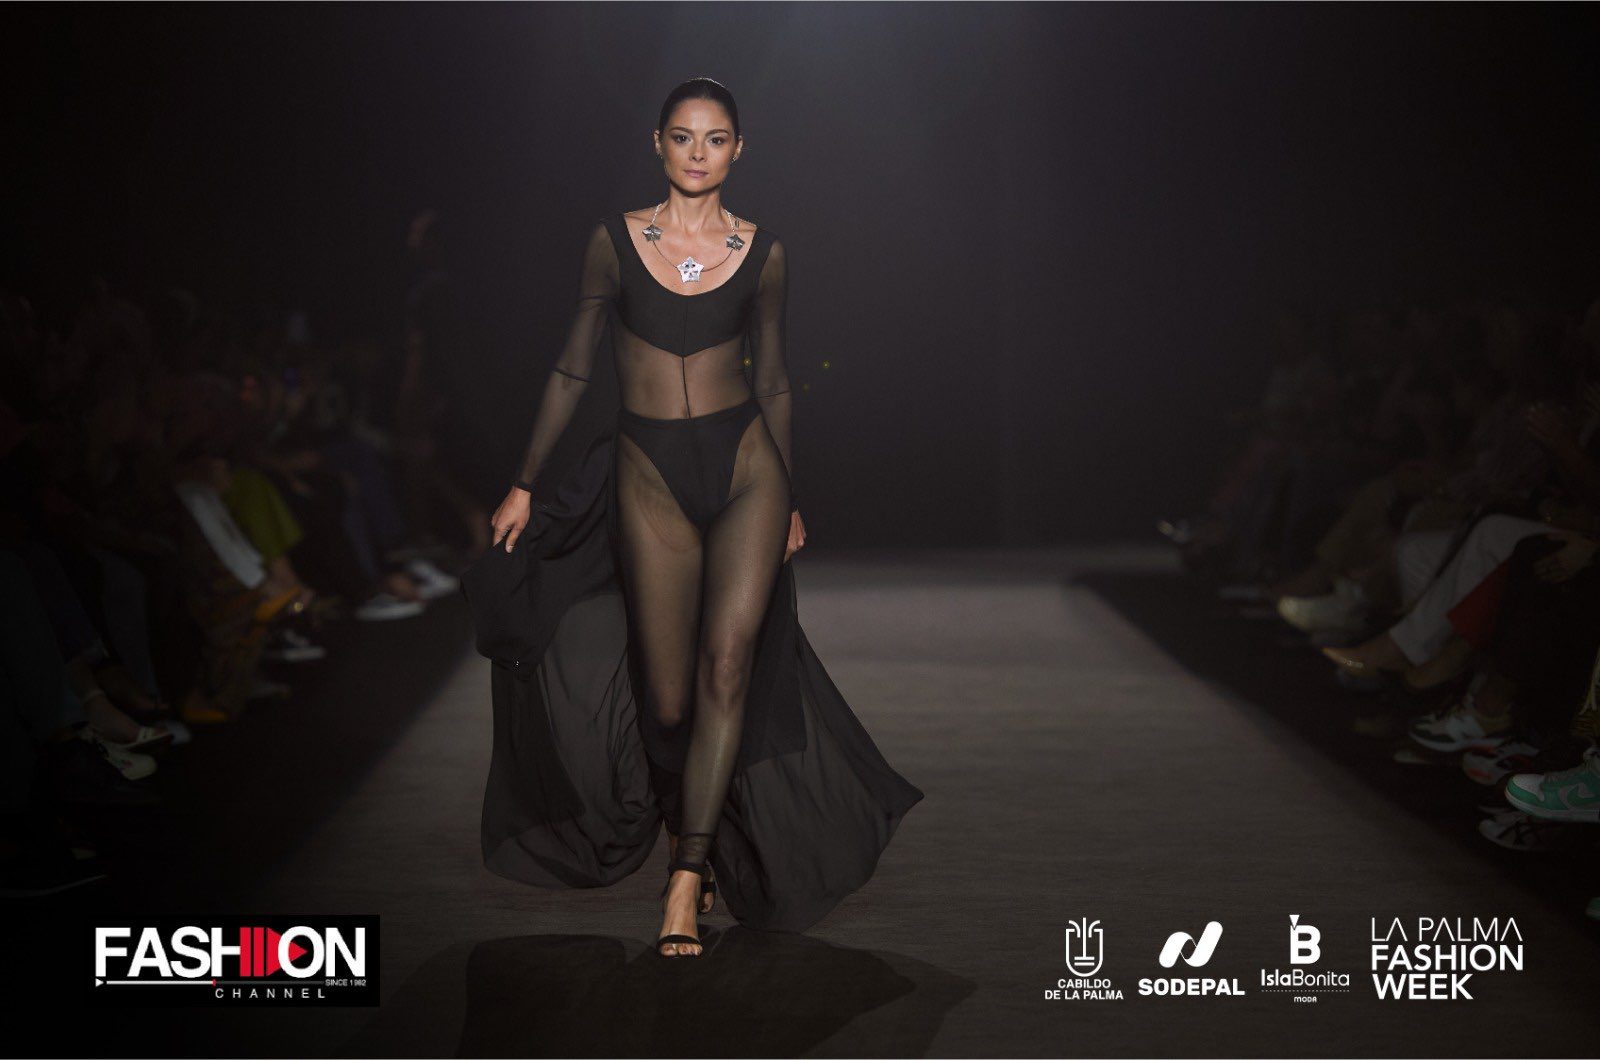 El canal internacional de moda Fashion Channel emitirá los desfiles de La Palma Fashion Week a nivel mundial